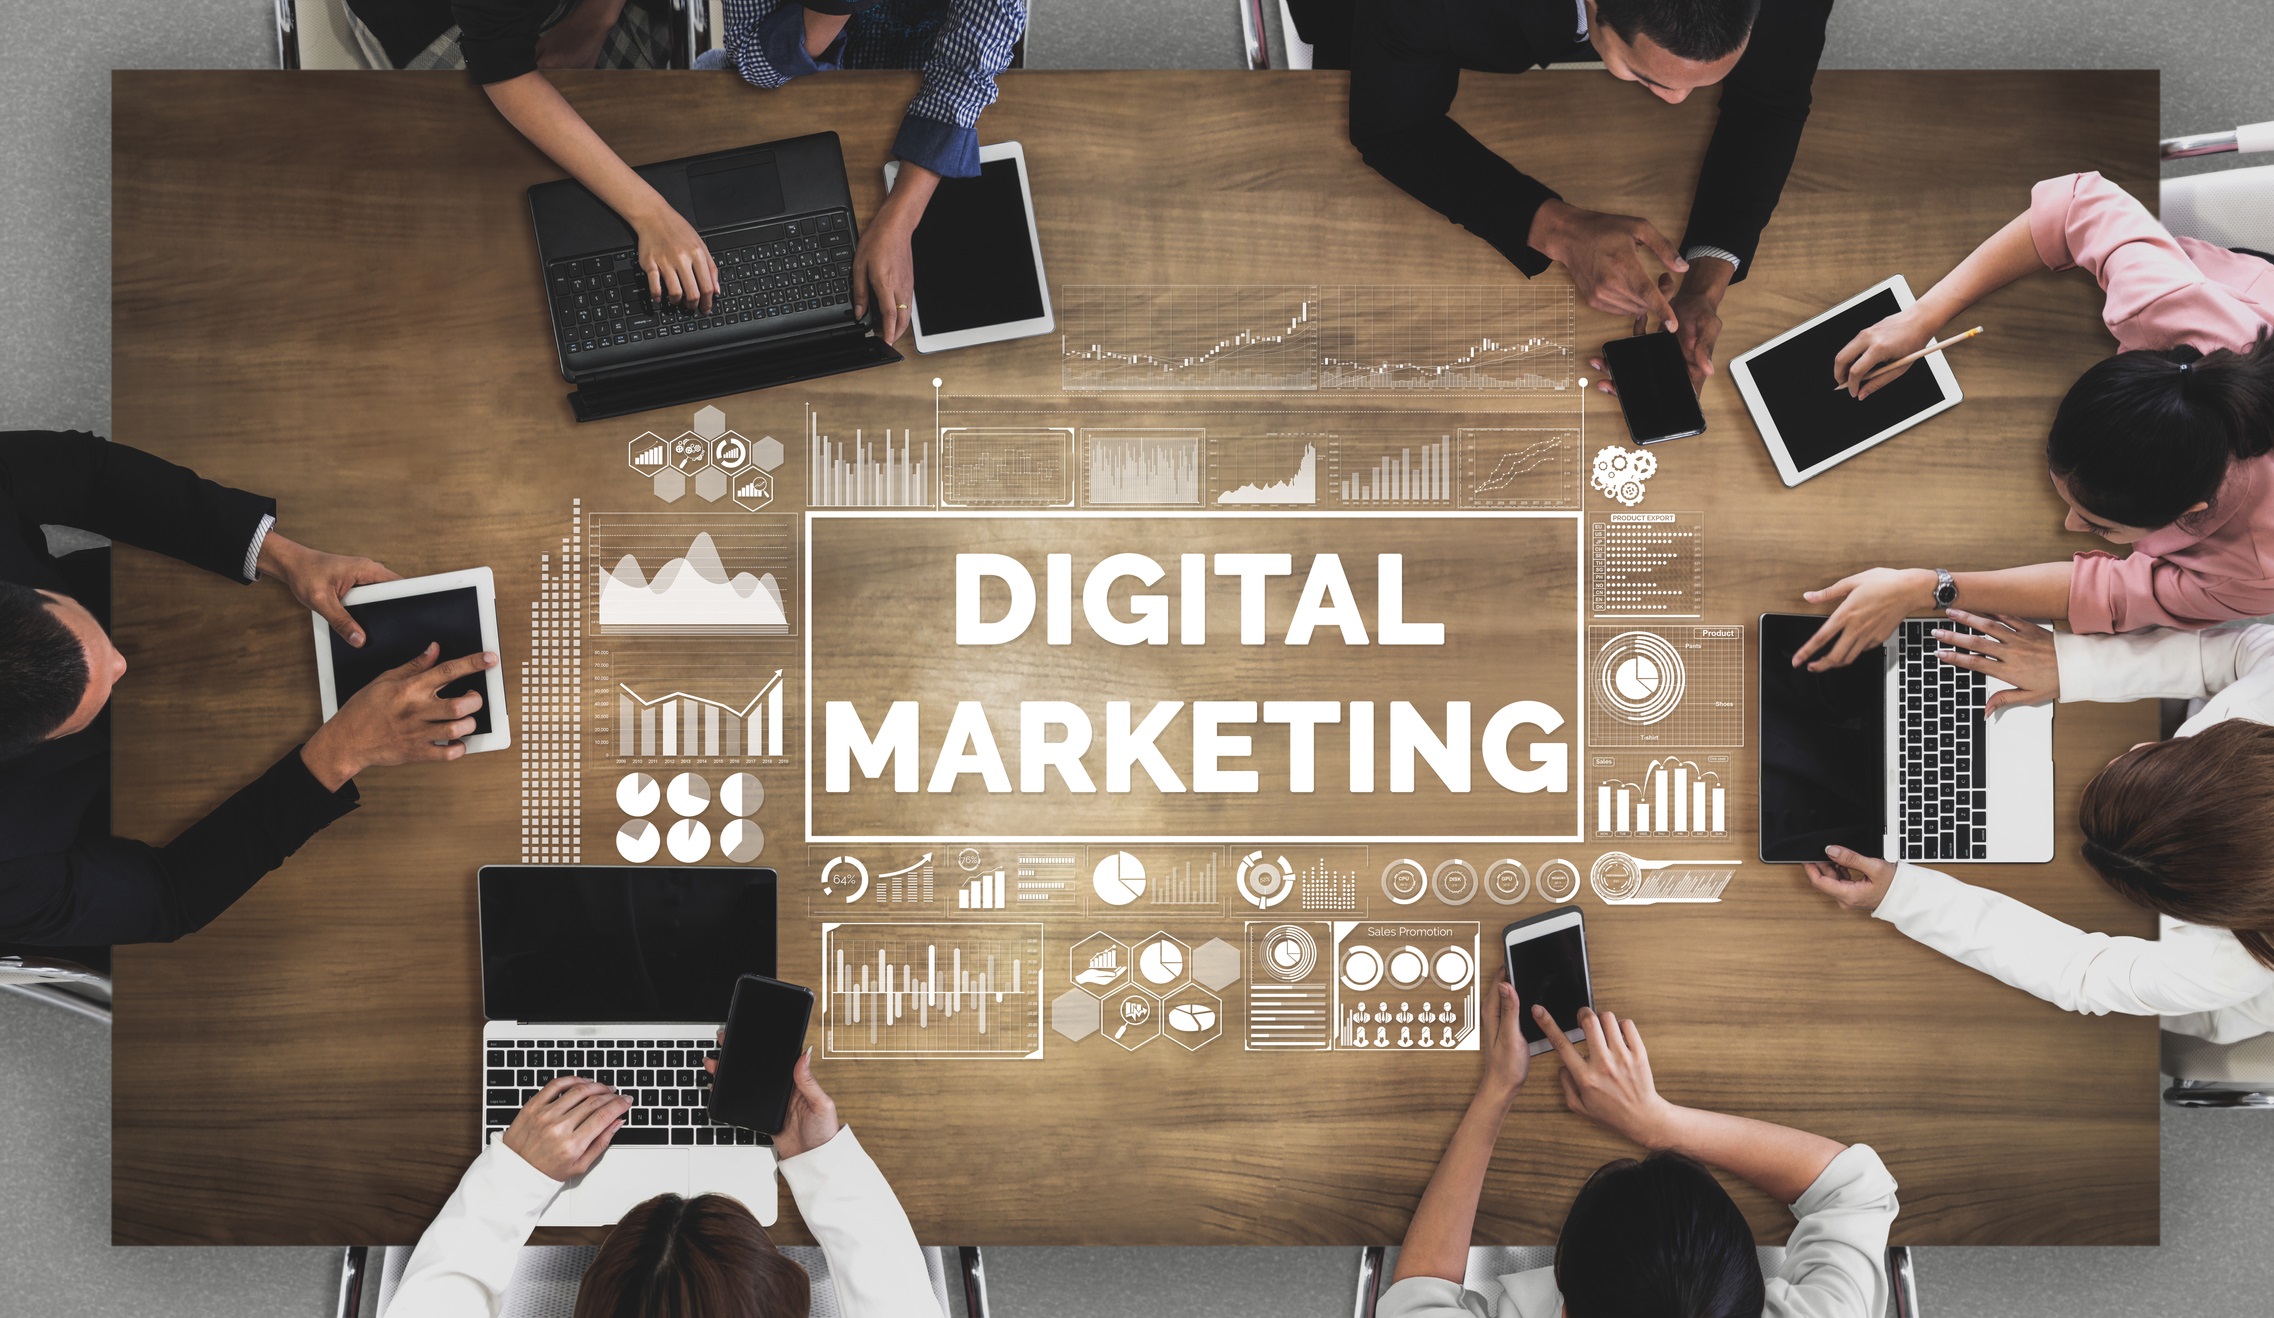 Digital marketing per le PMI